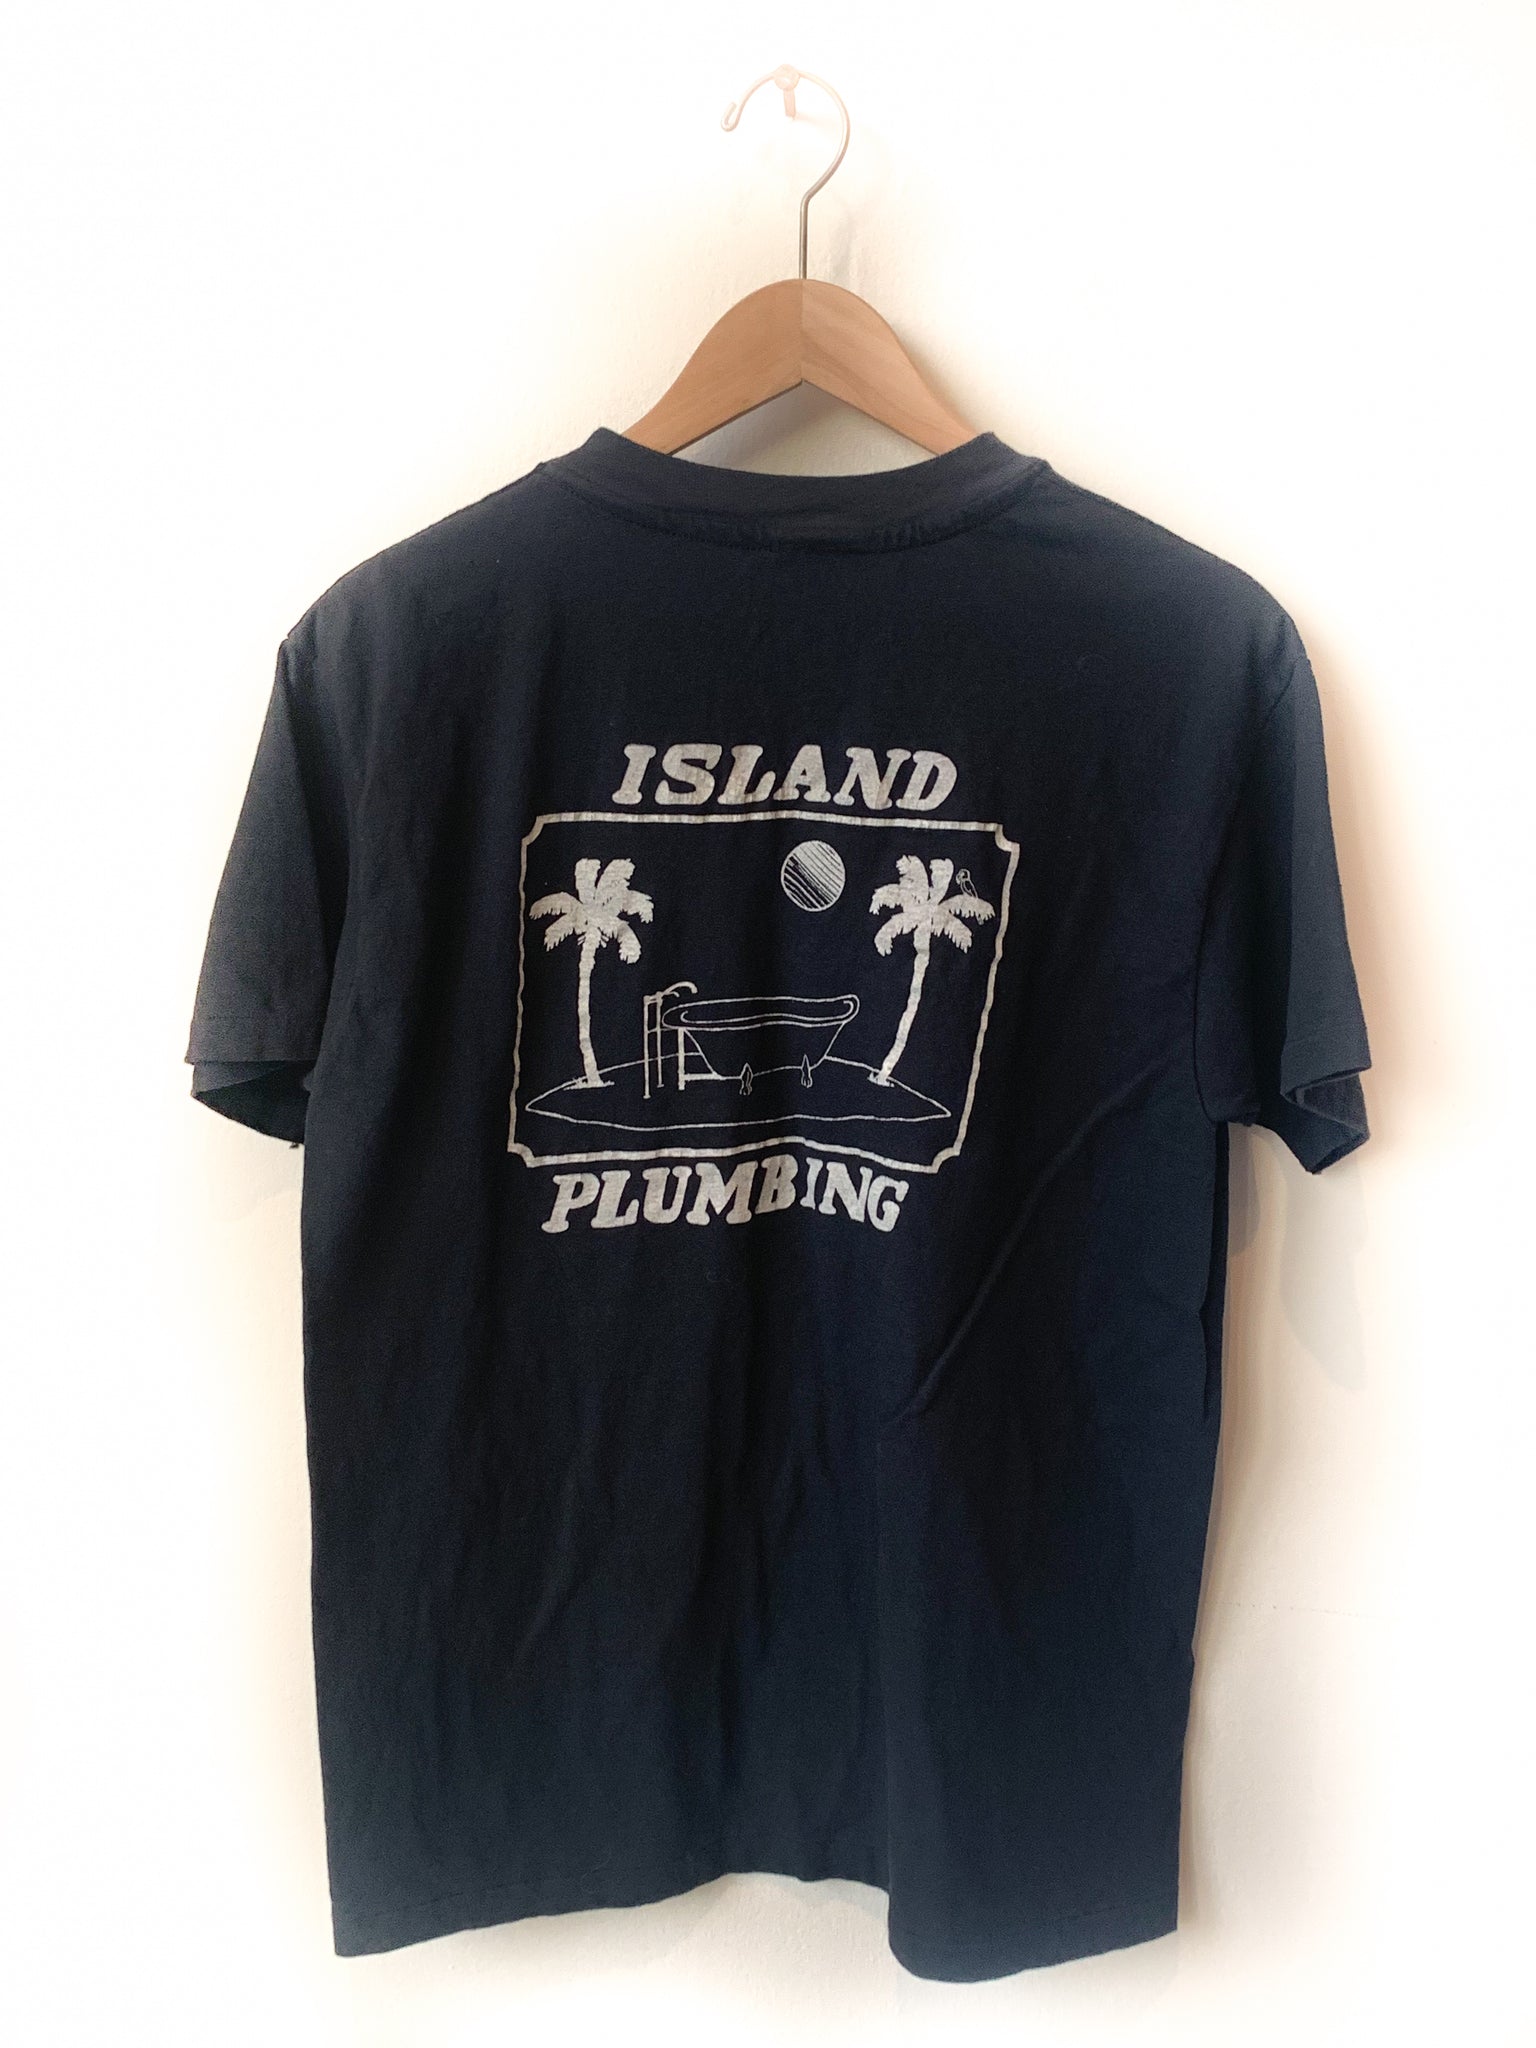 ISLAND PLUMBING